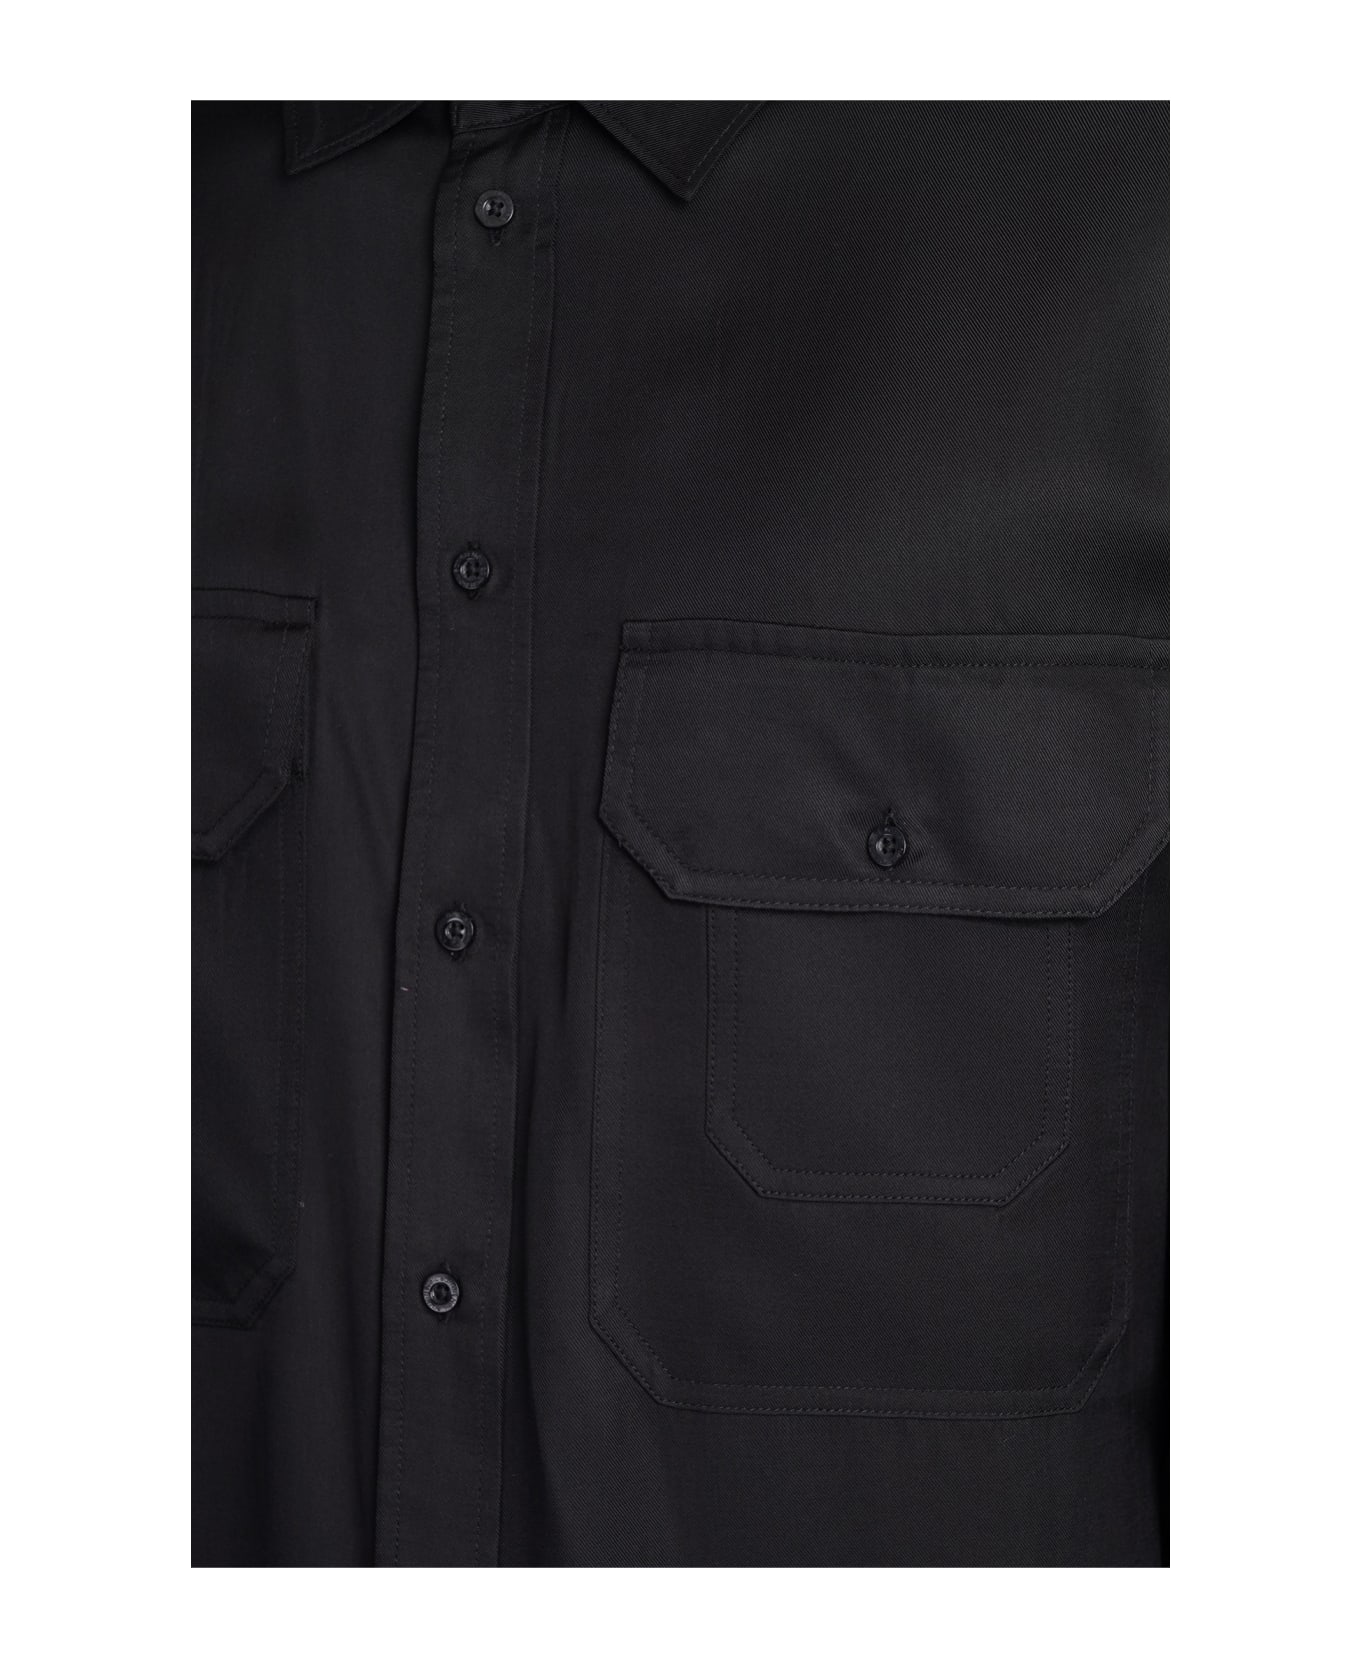 Neil Barrett Shirt In Black Viscose - black シャツ